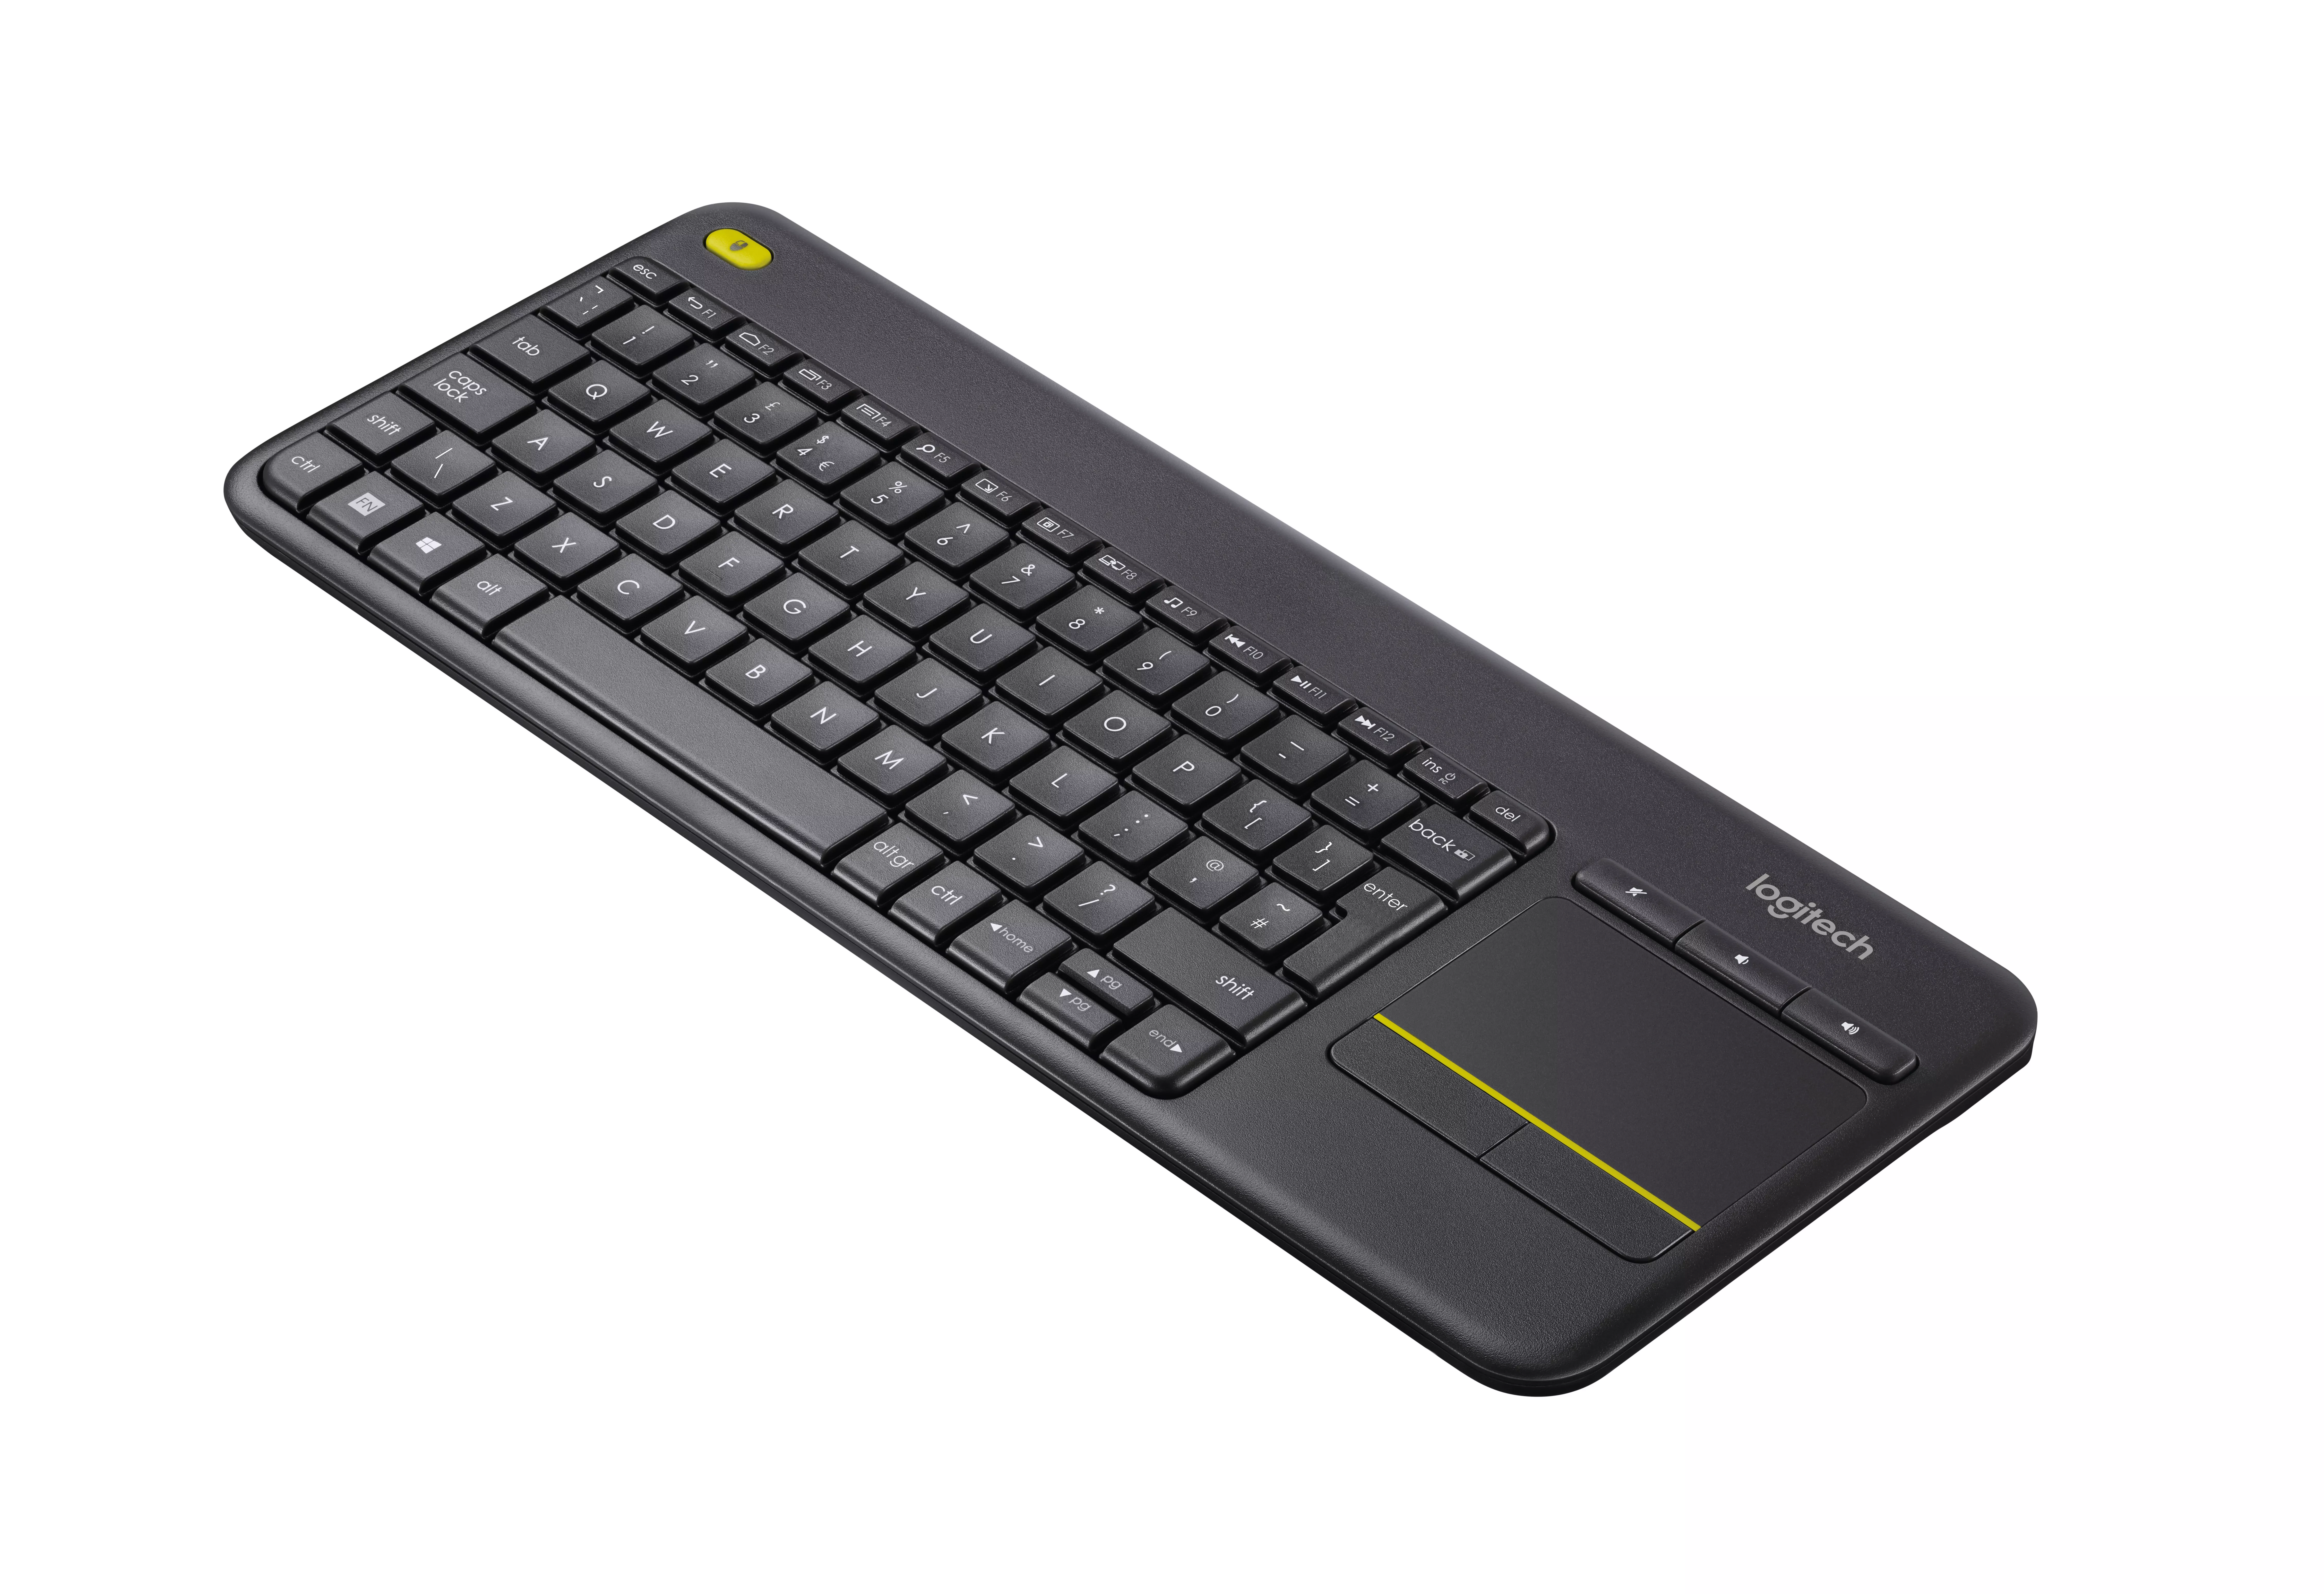 Vente Logitech Wireless Touch Keyboard K400 Plus Clavier HTPC Logitech au meilleur prix - visuel 4